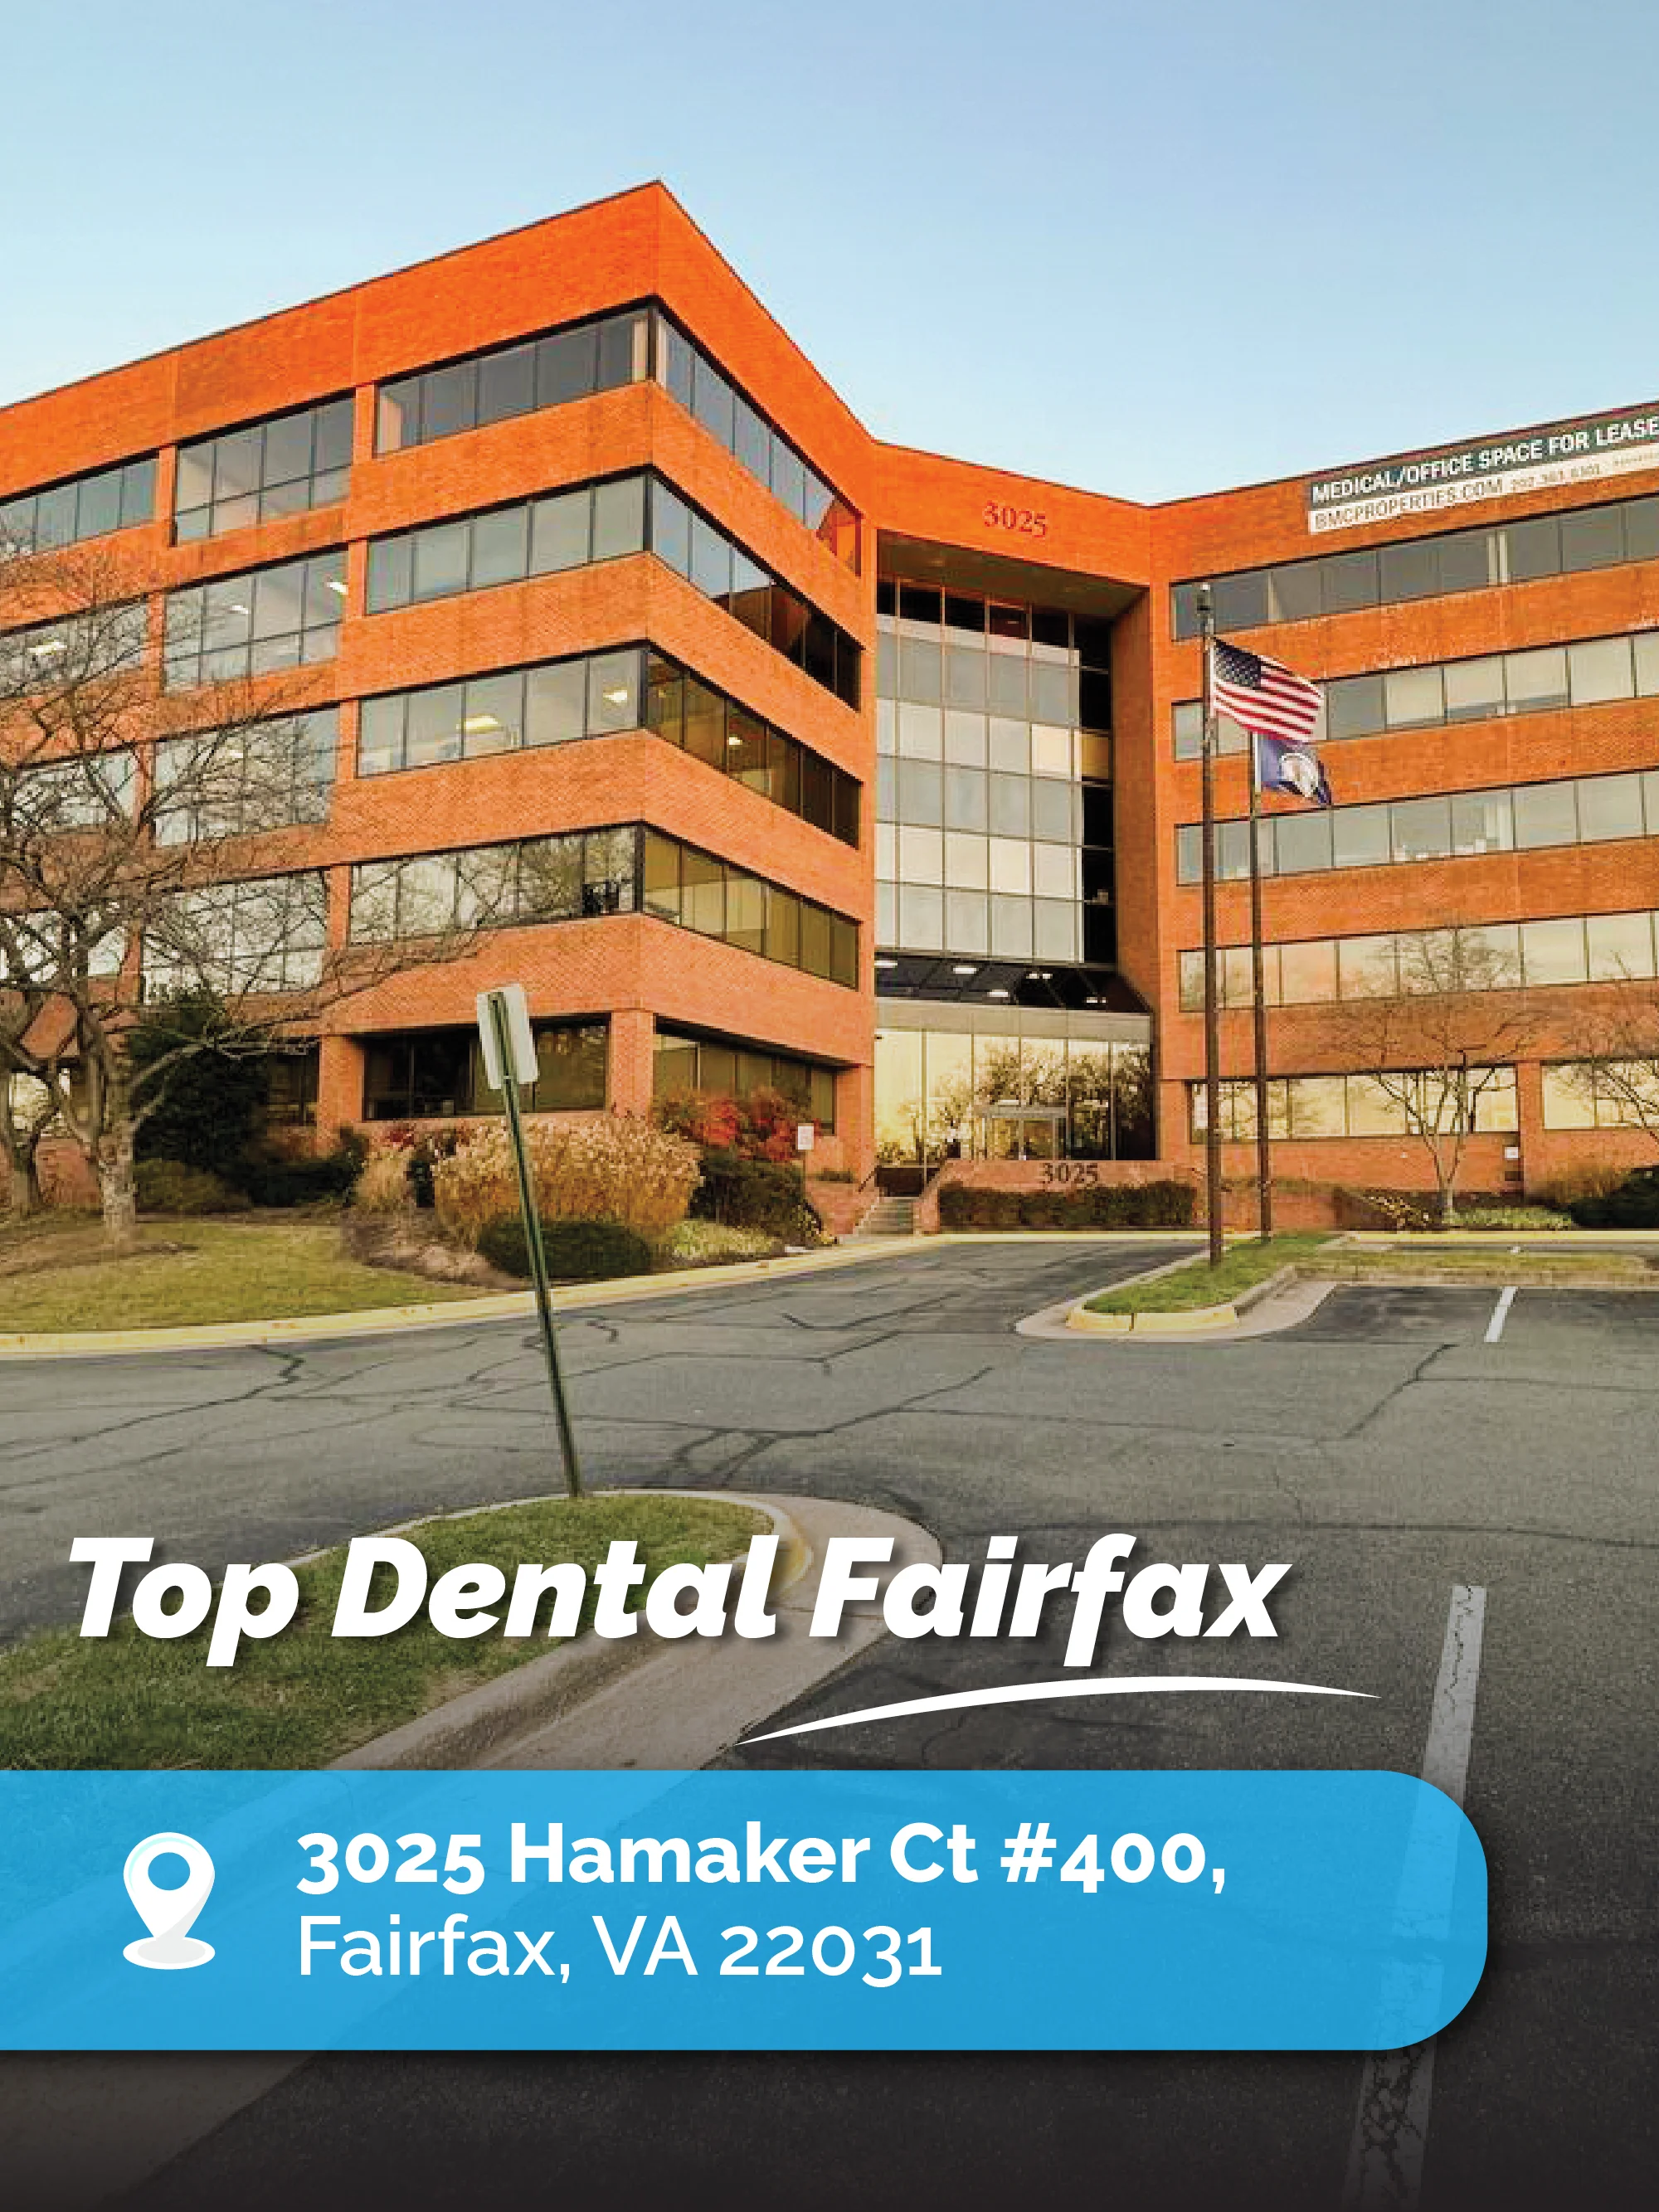 Top Dental Fairfax